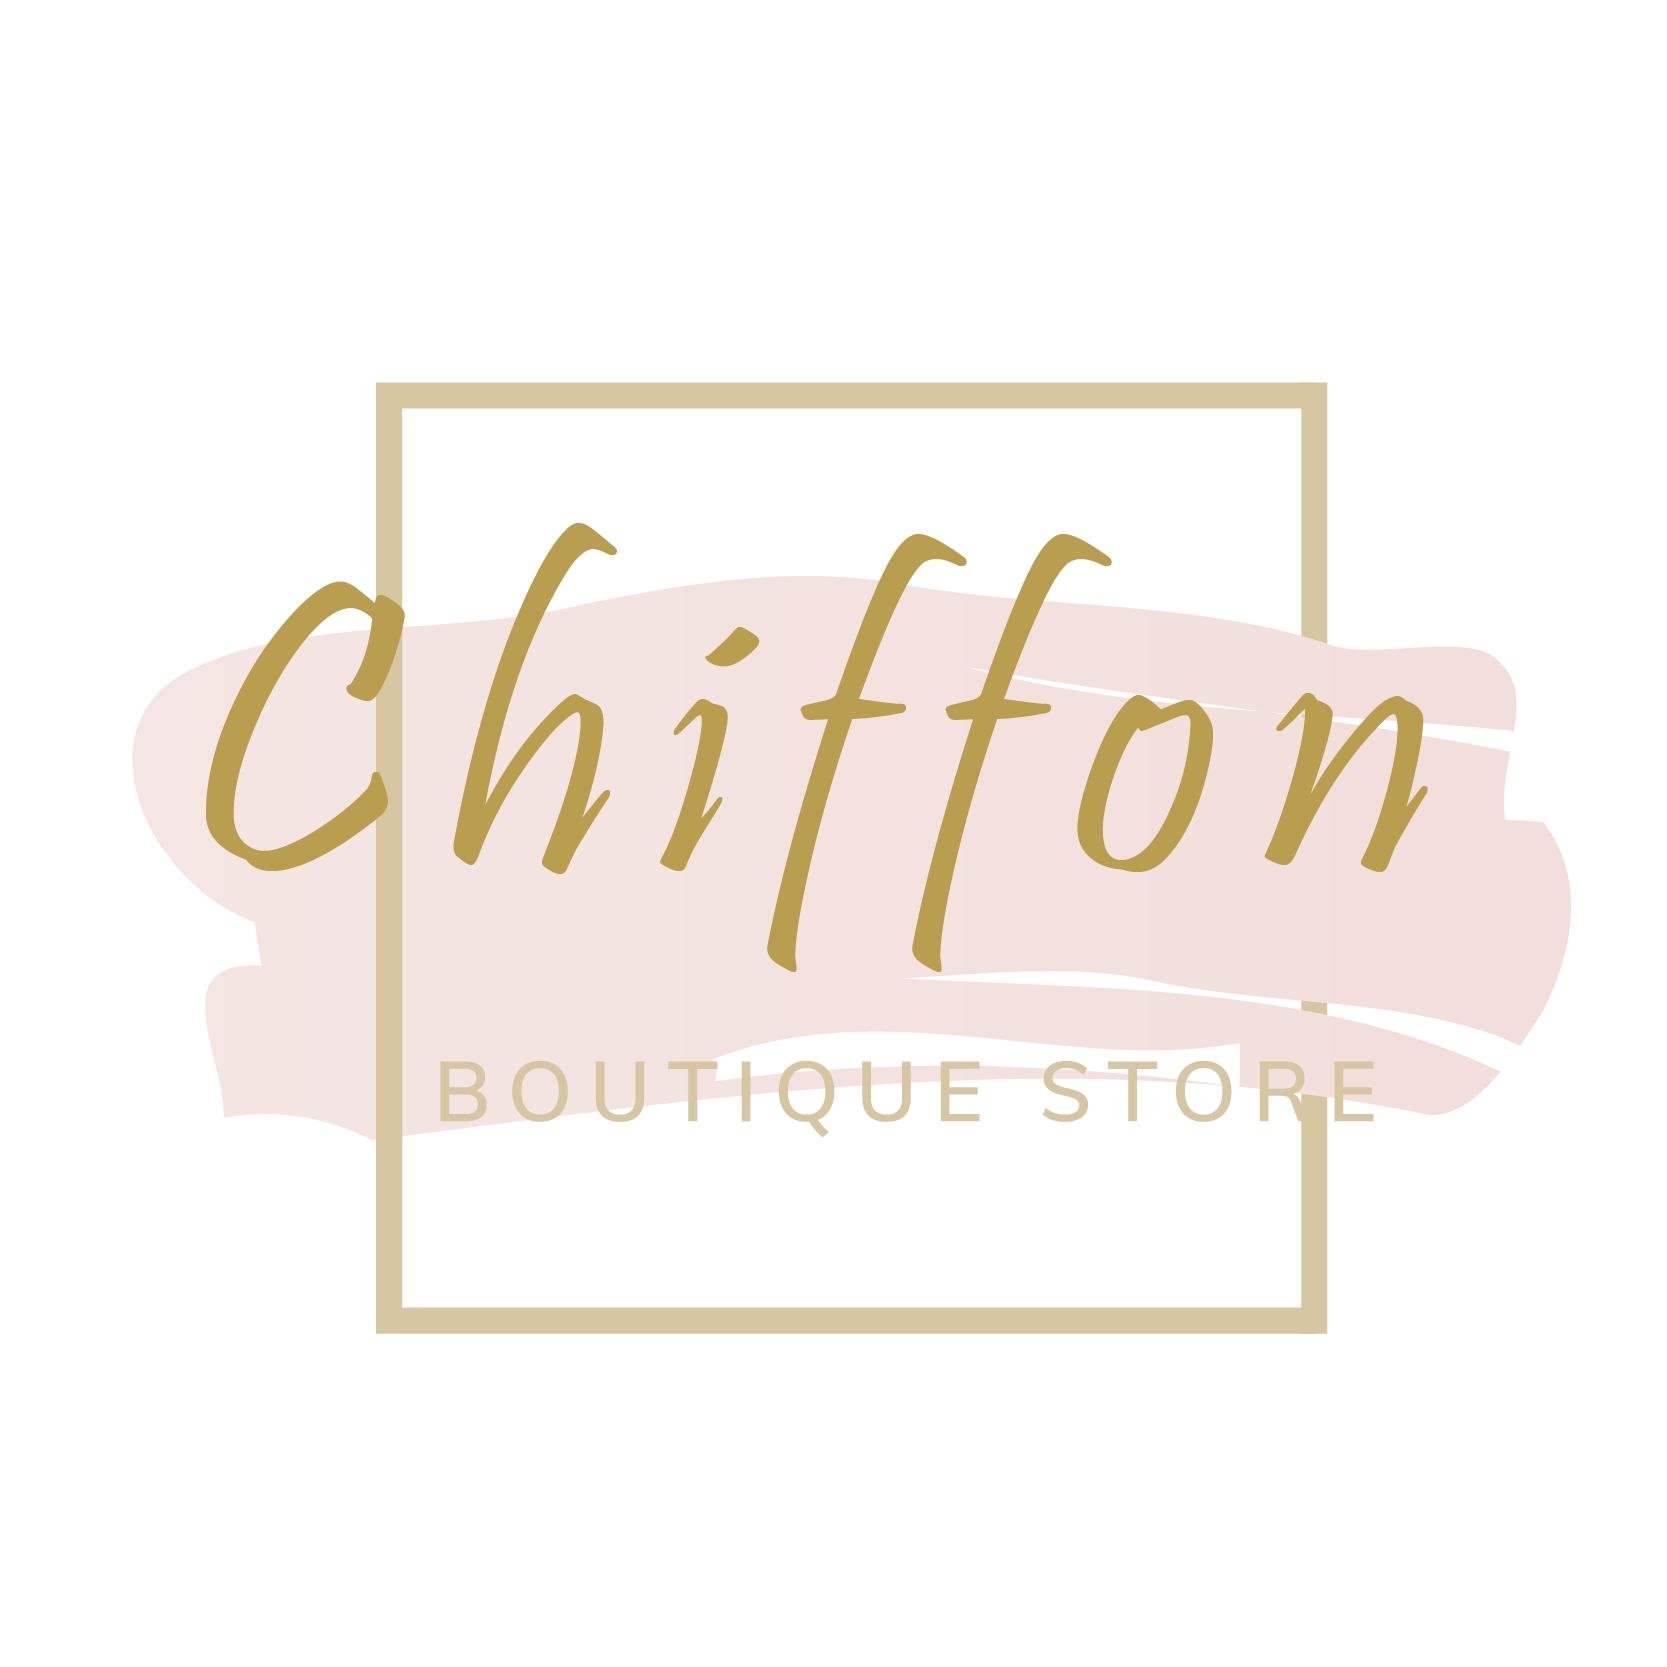 chiffon boutique store